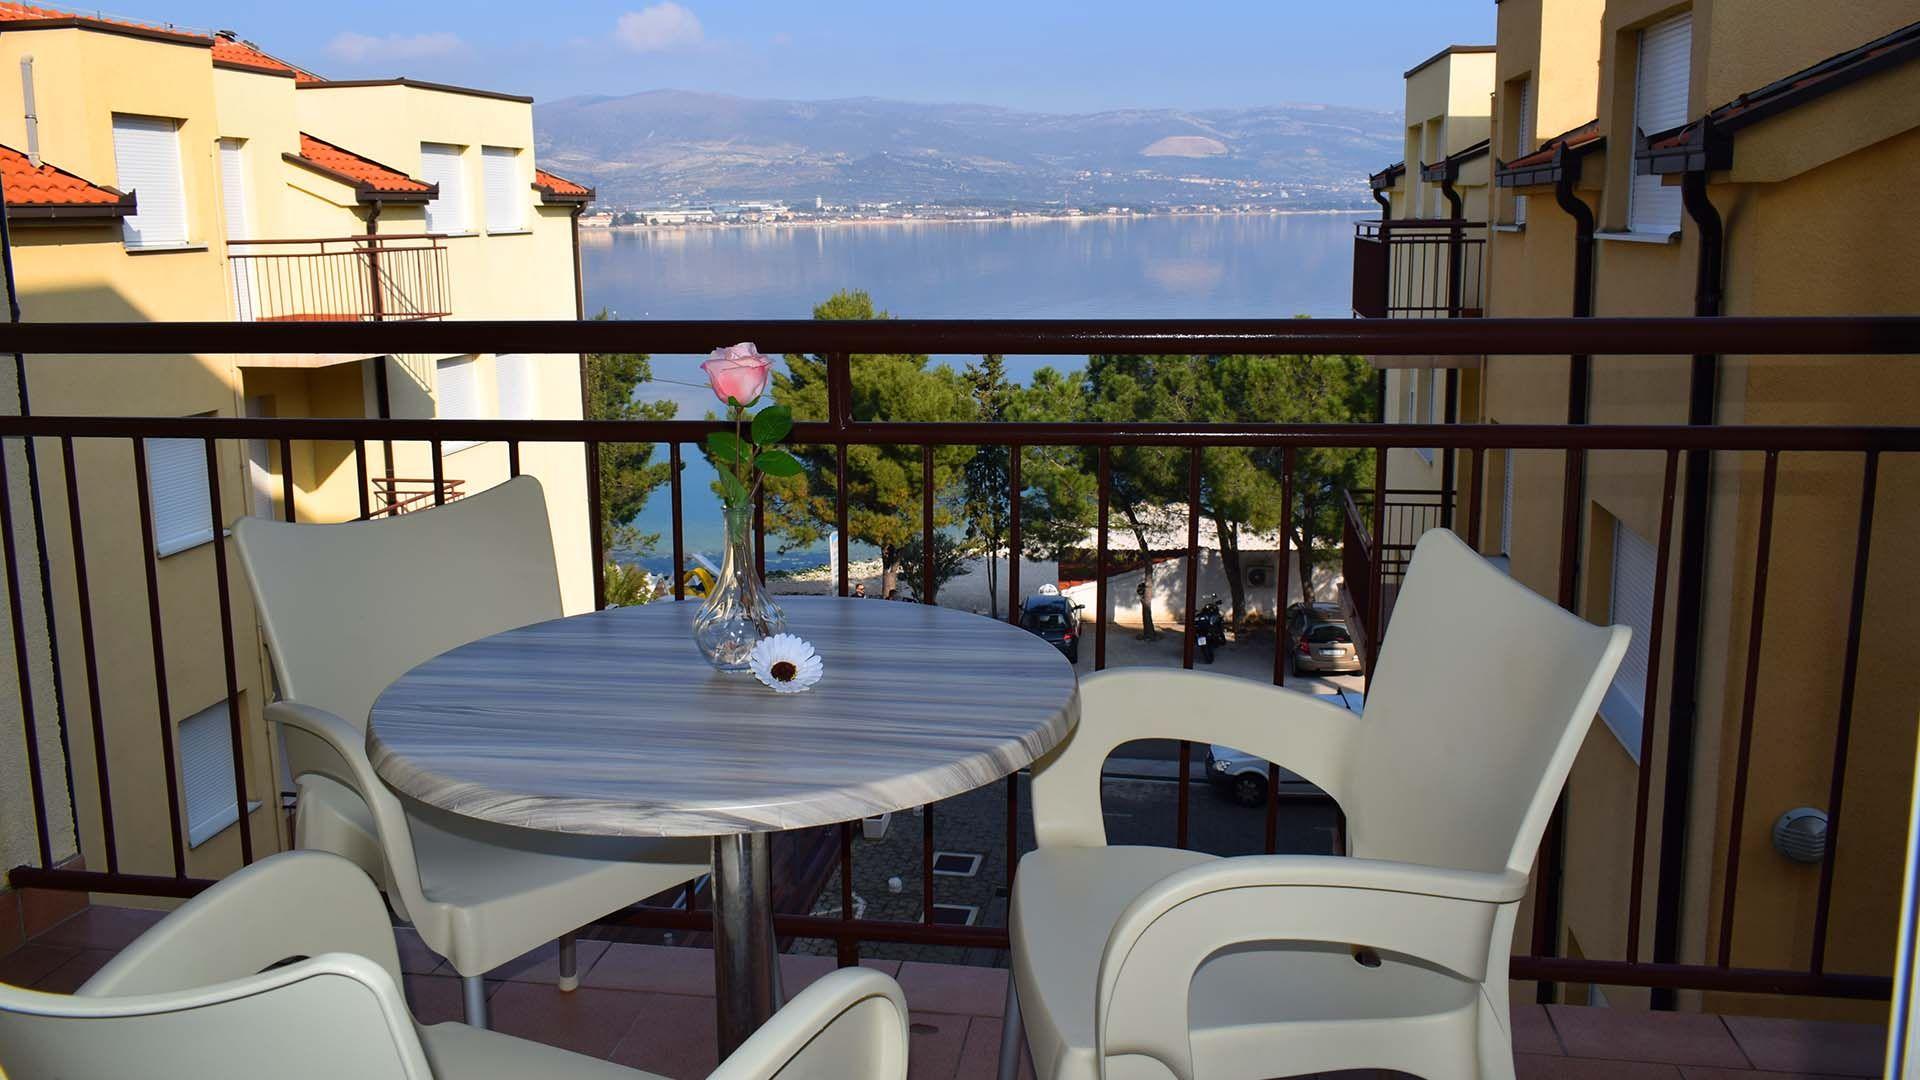 Ferienwohnung für 5 Personen ca. 70 m² i  in Dalmatien